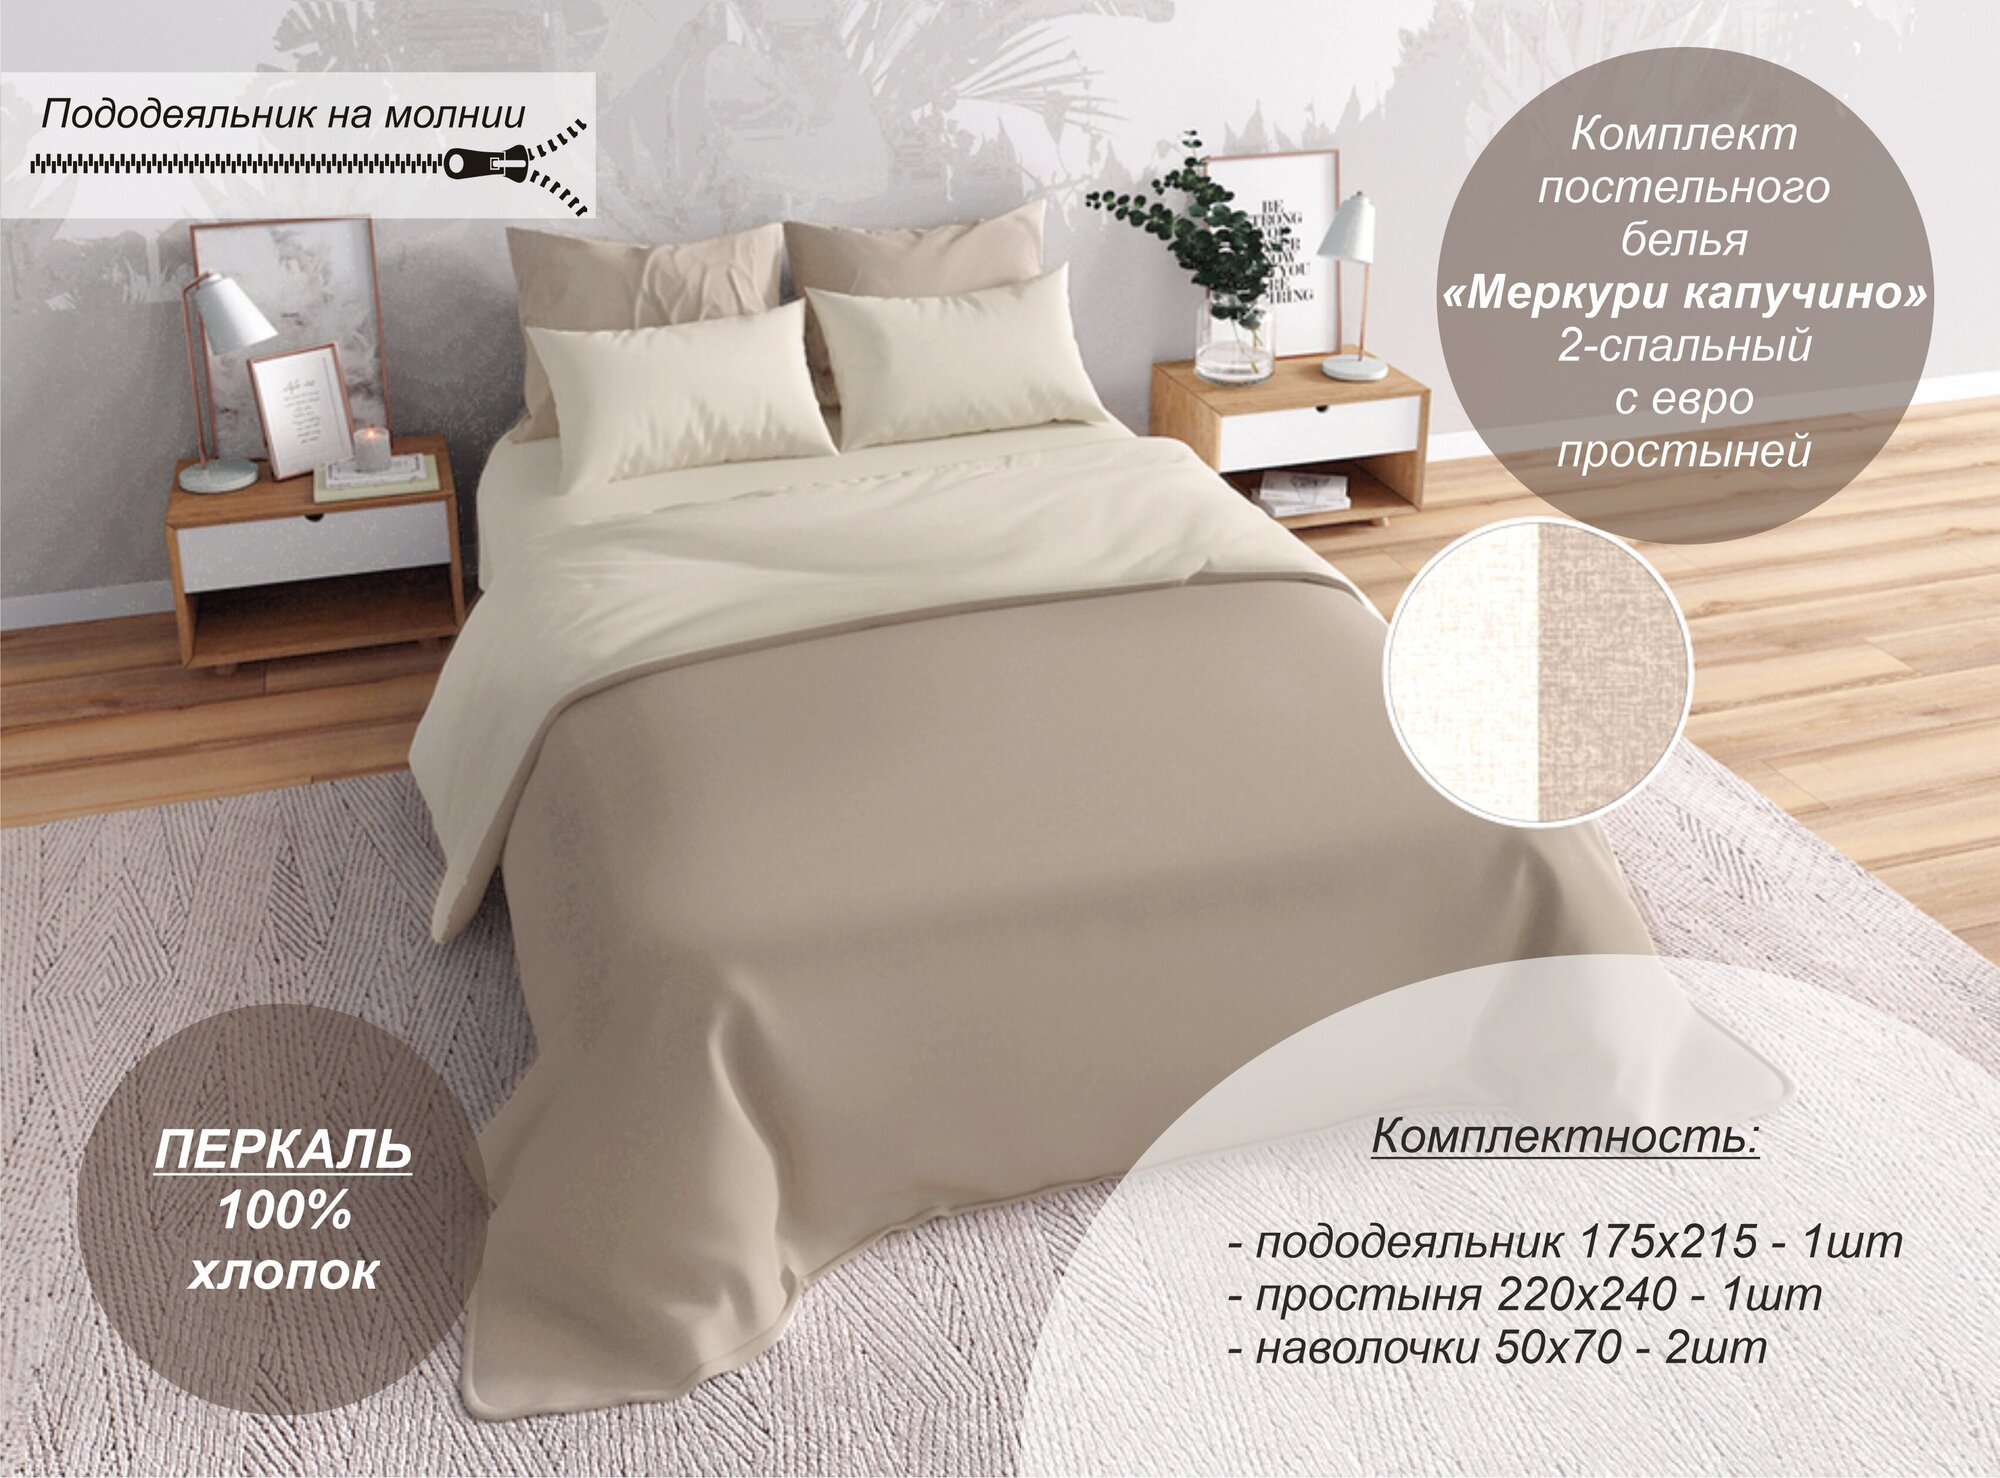 Комплект постельного белья Текстильный Dом, "Меркури капучино" 2-спальный с евро простыней (Перкаль, наволочки 50х70) - фотография № 1